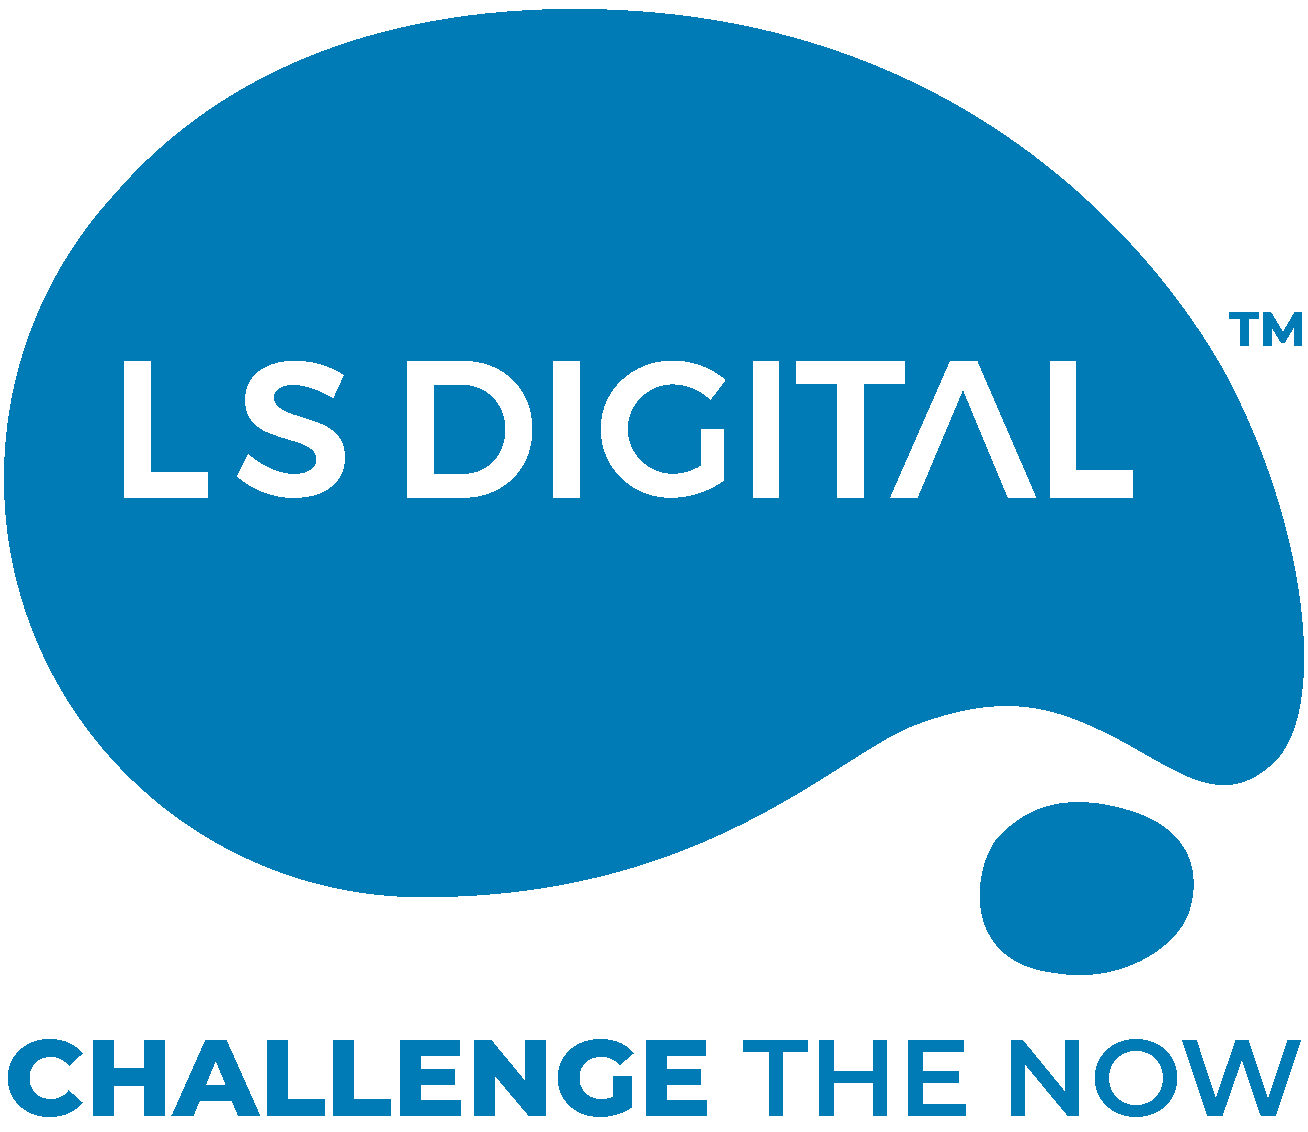 LS Digital